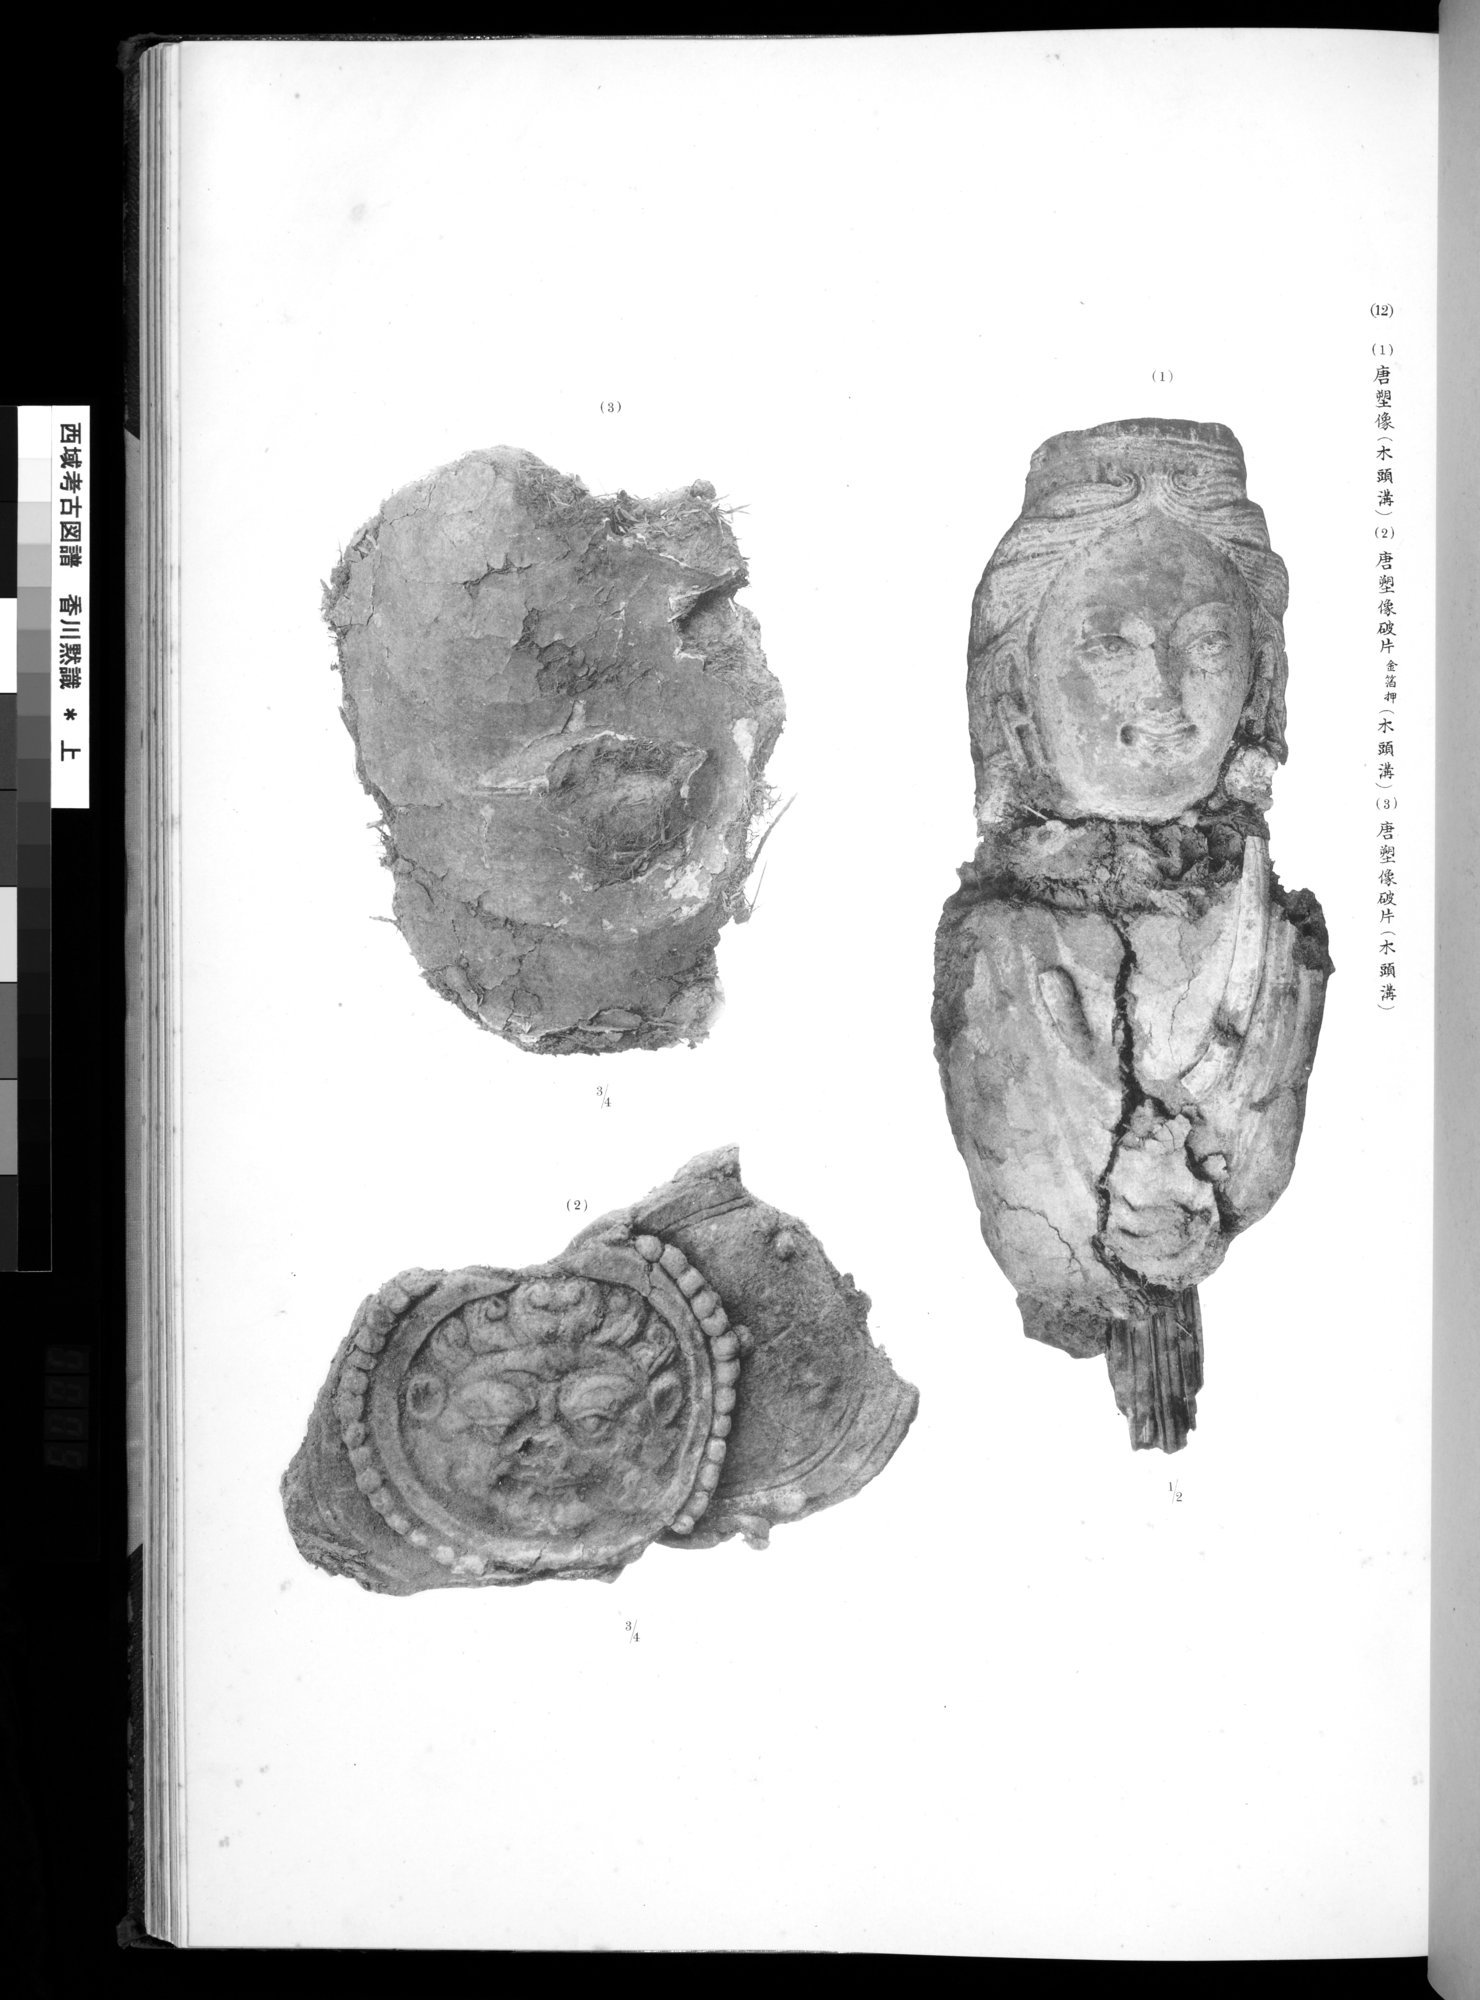 西域考古図譜 : vol.1 / 159 ページ（白黒高解像度画像）